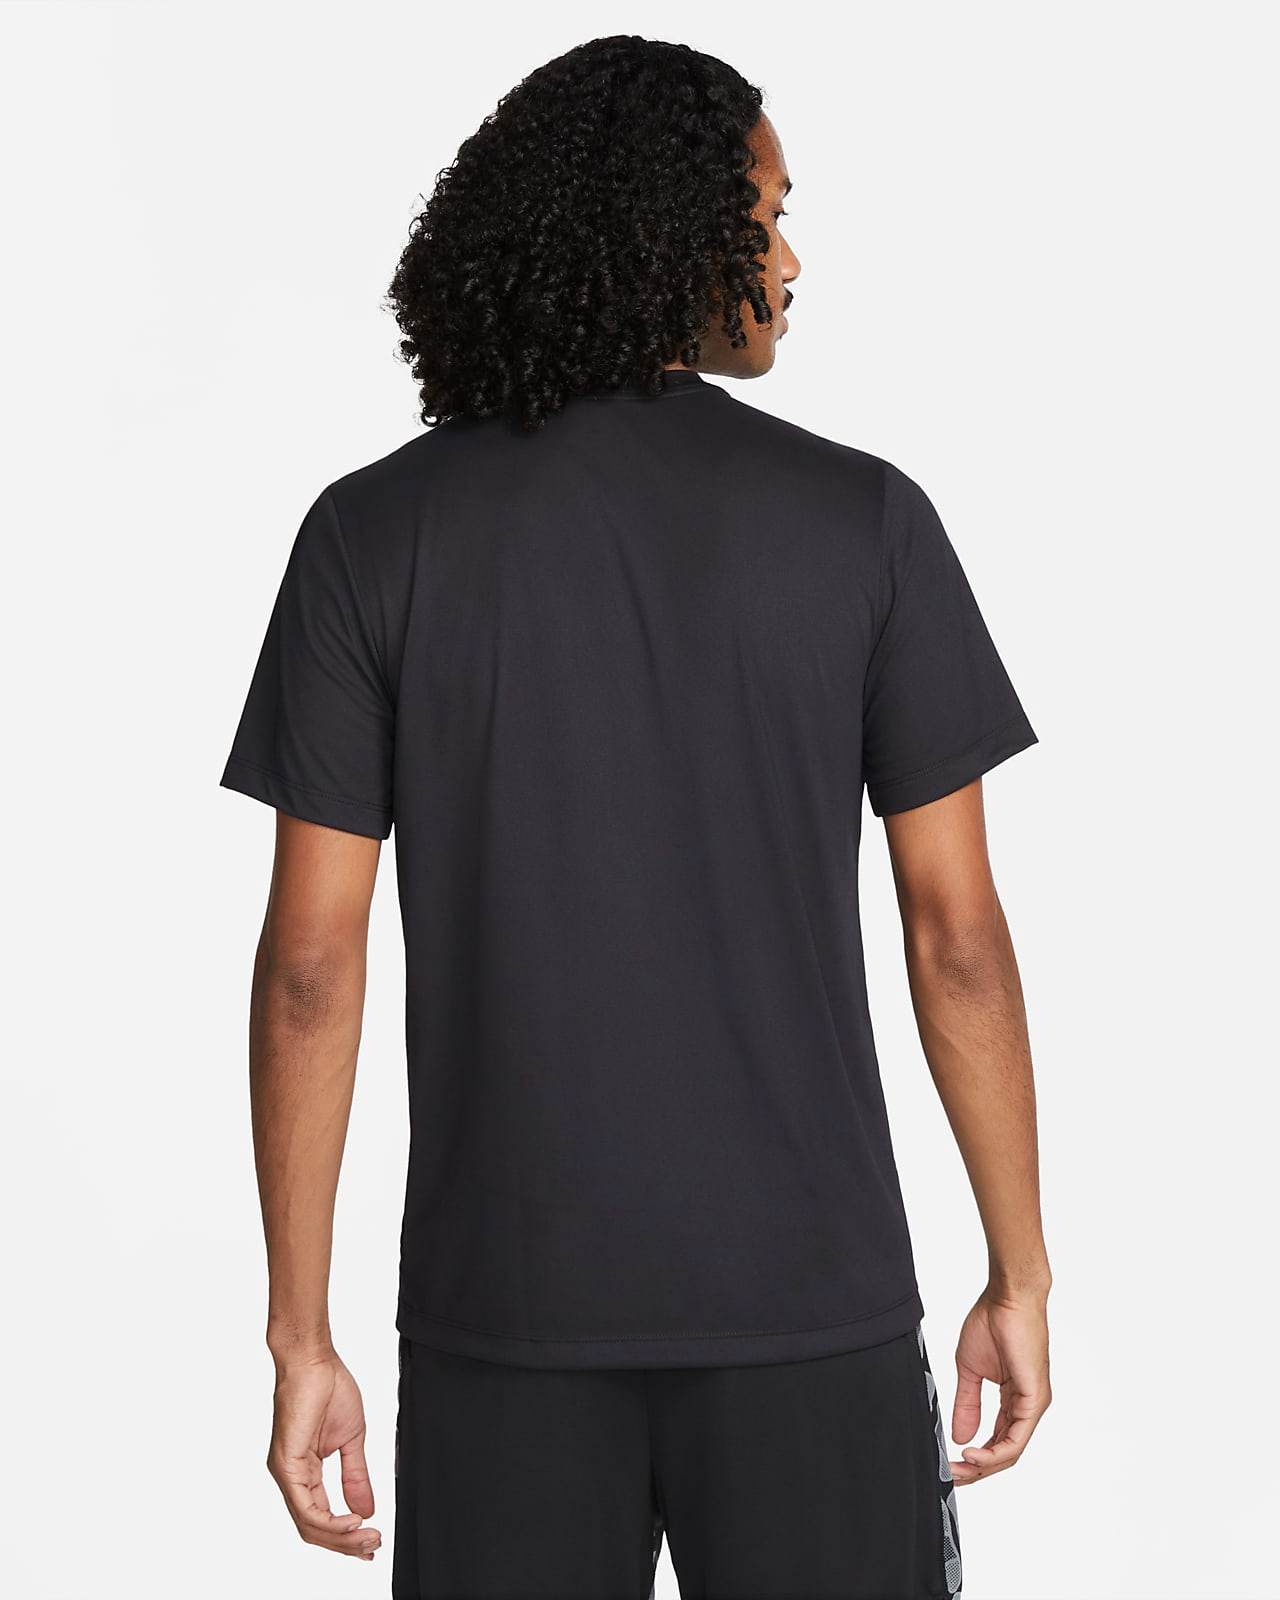 Nike Dri-Fit Legend T-Shirt